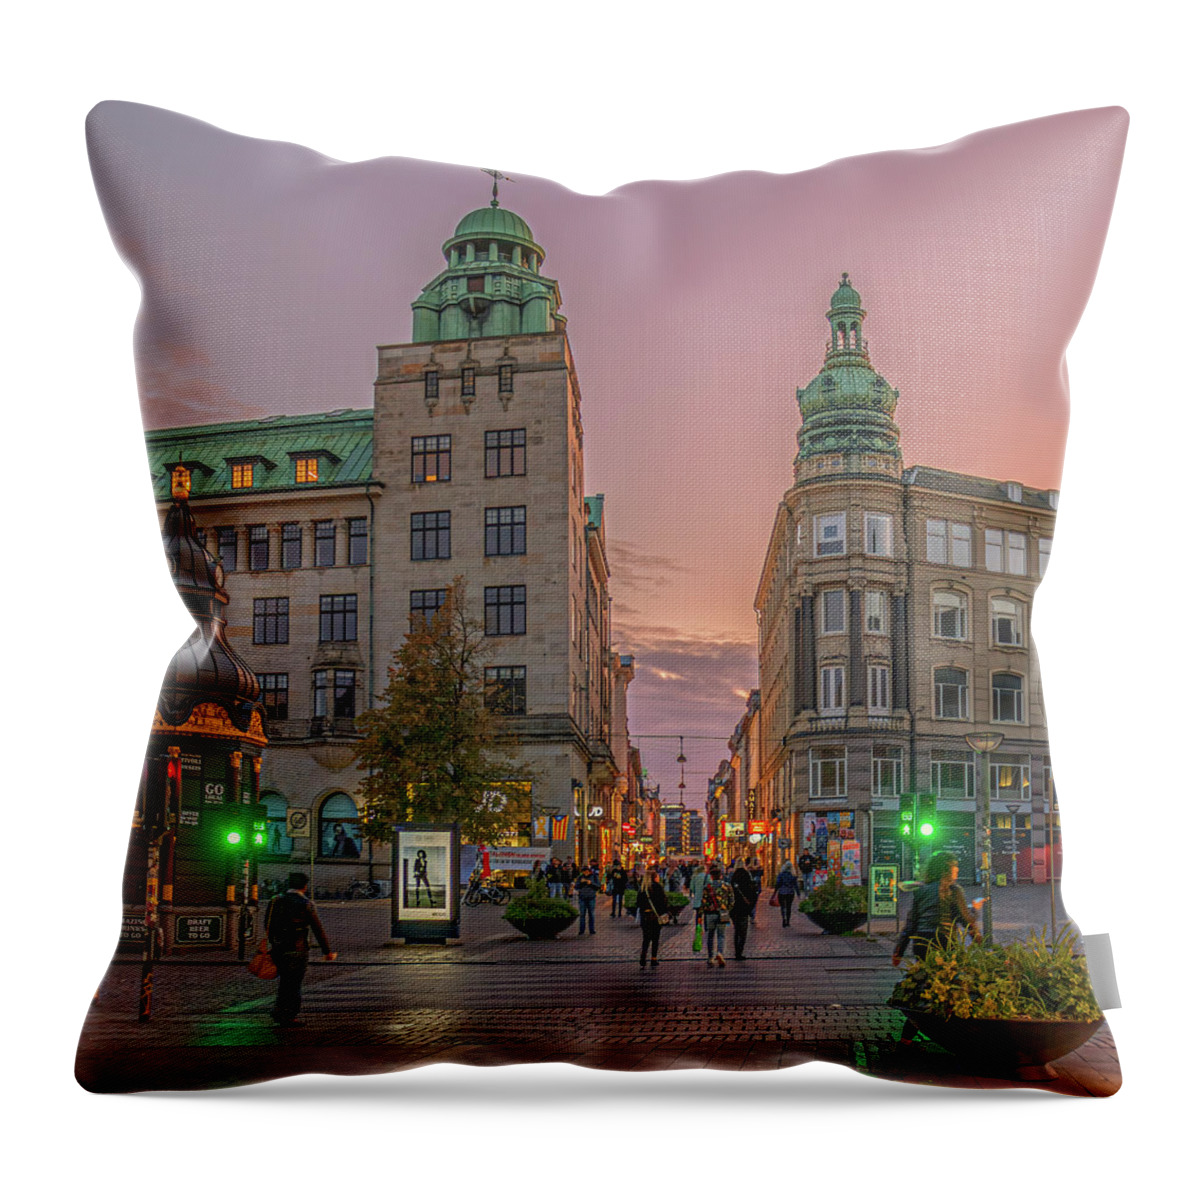 Copenhagen Throw Pillow featuring the photograph Green Light by Karen Sirnick